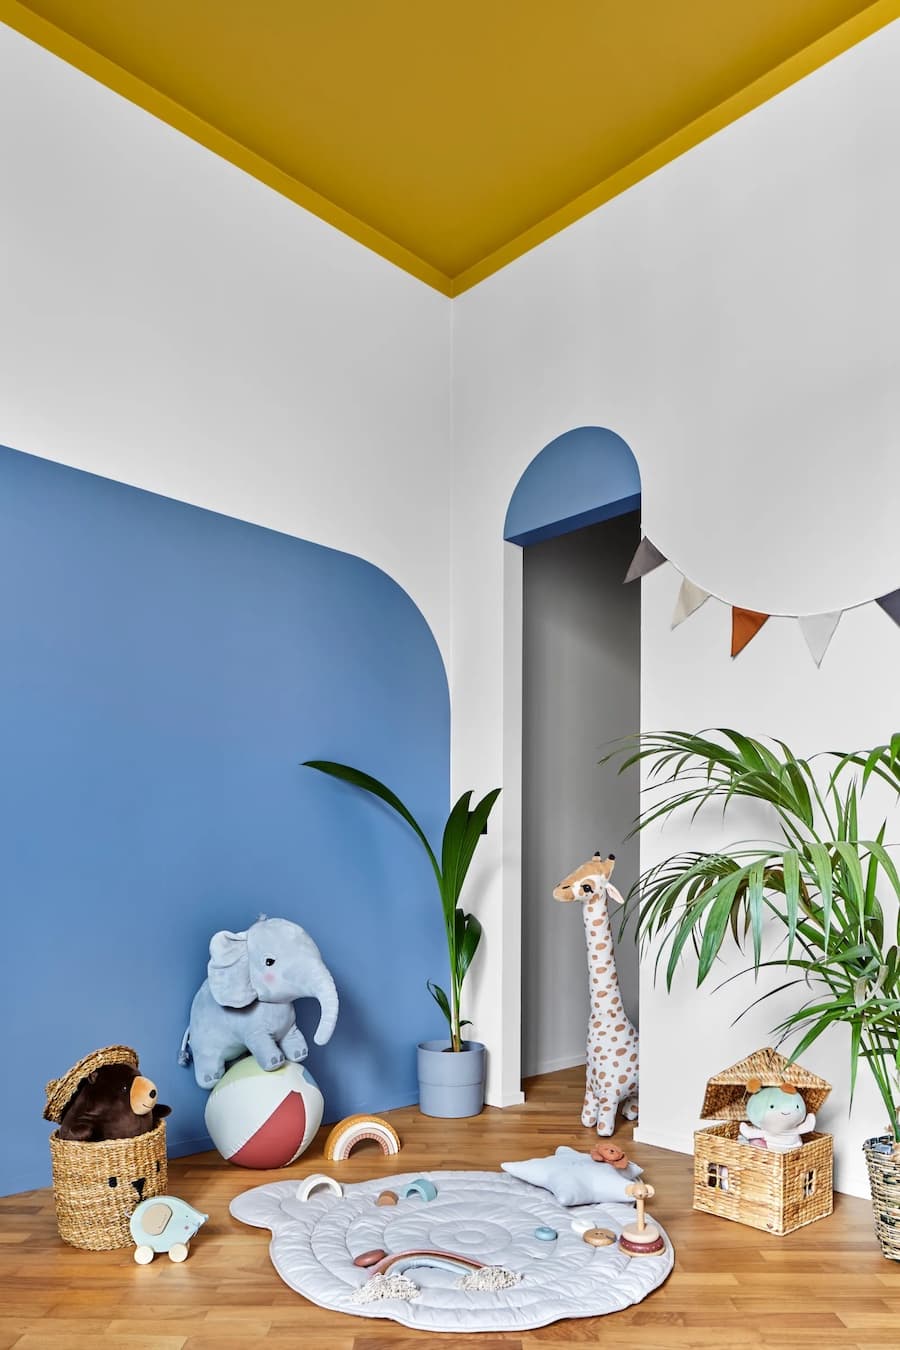 Dormitorio infantil con paredes blancas y un muro pintado azul con forma curva. El techo es color ocre y traspasa los muros para darle continuidad. Juguetes y animales de peluche en el suelo, y plantas tropicales en macetas de colores